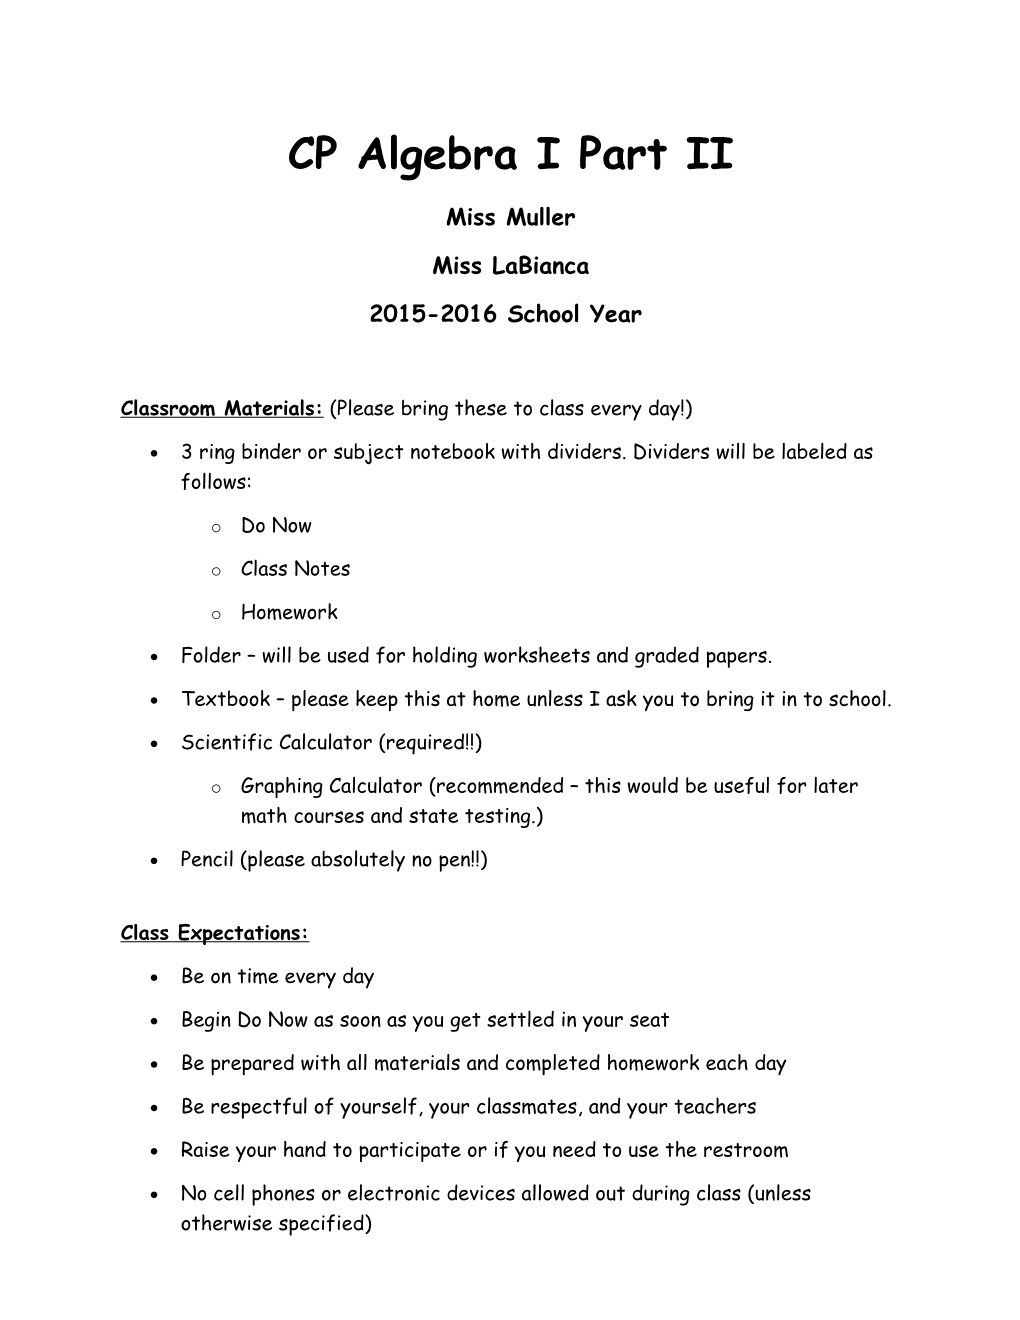 CP Algebra I Part II s1